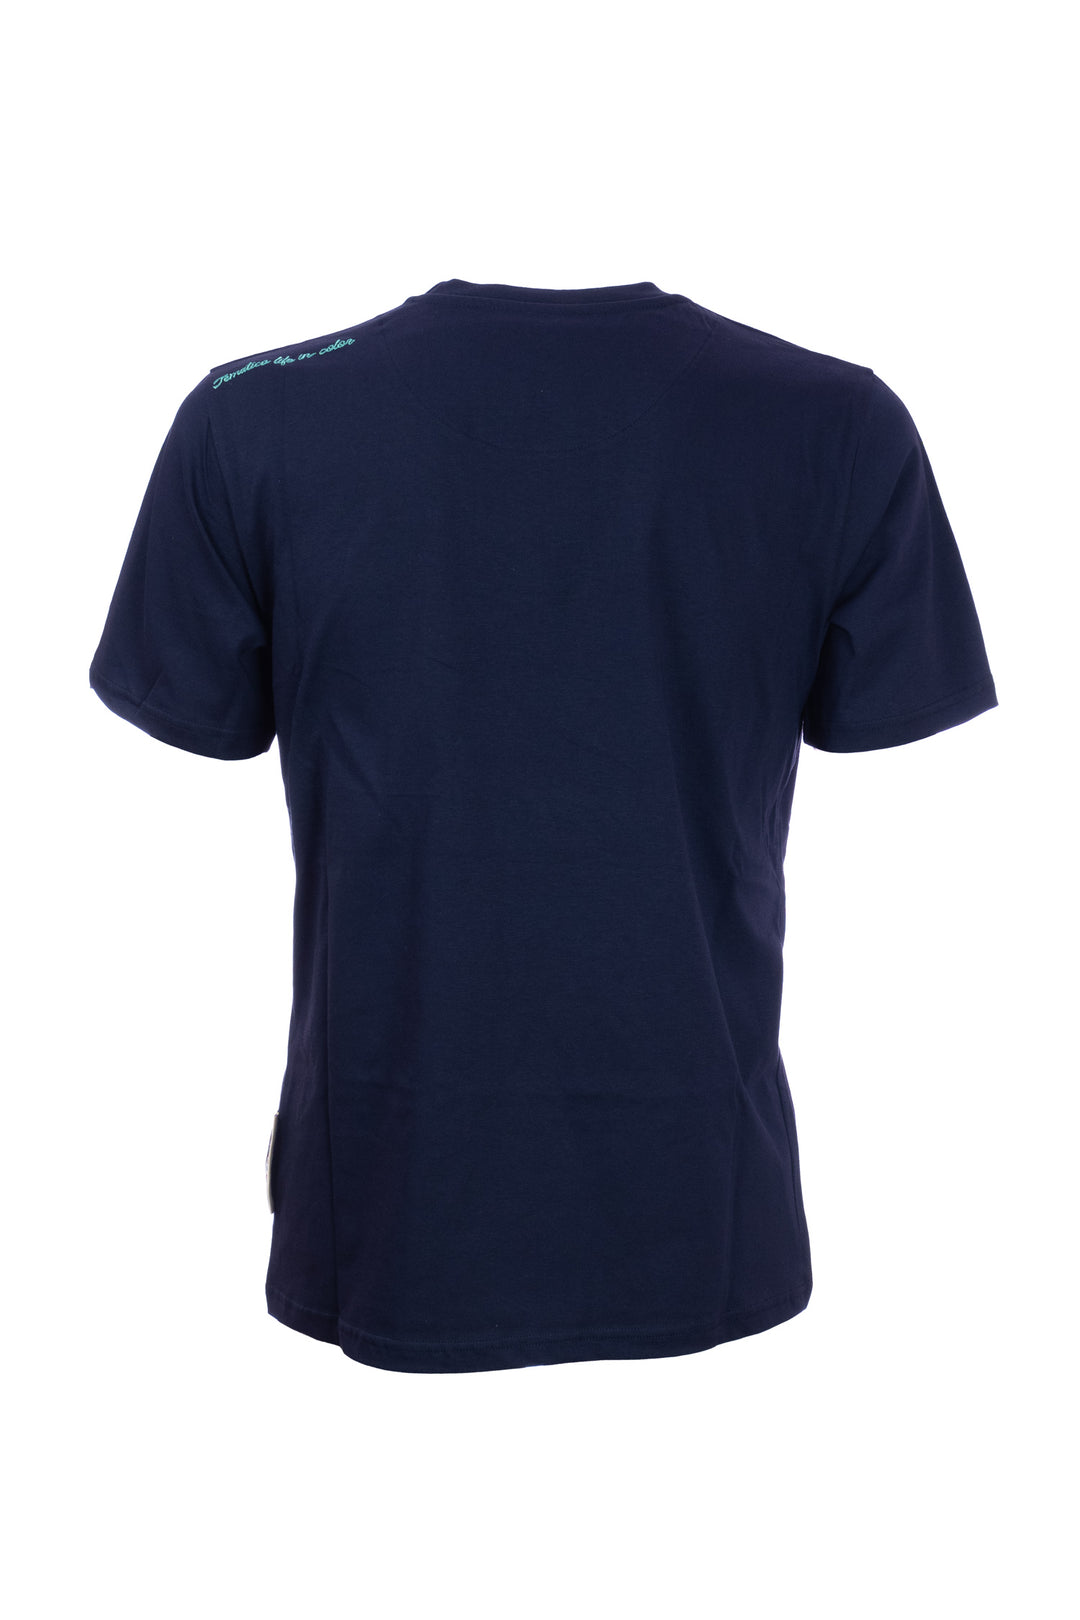 TEMATICO T-shirt blu navy in cotone con ricamo Panda sul petto - Mancinelli 1954